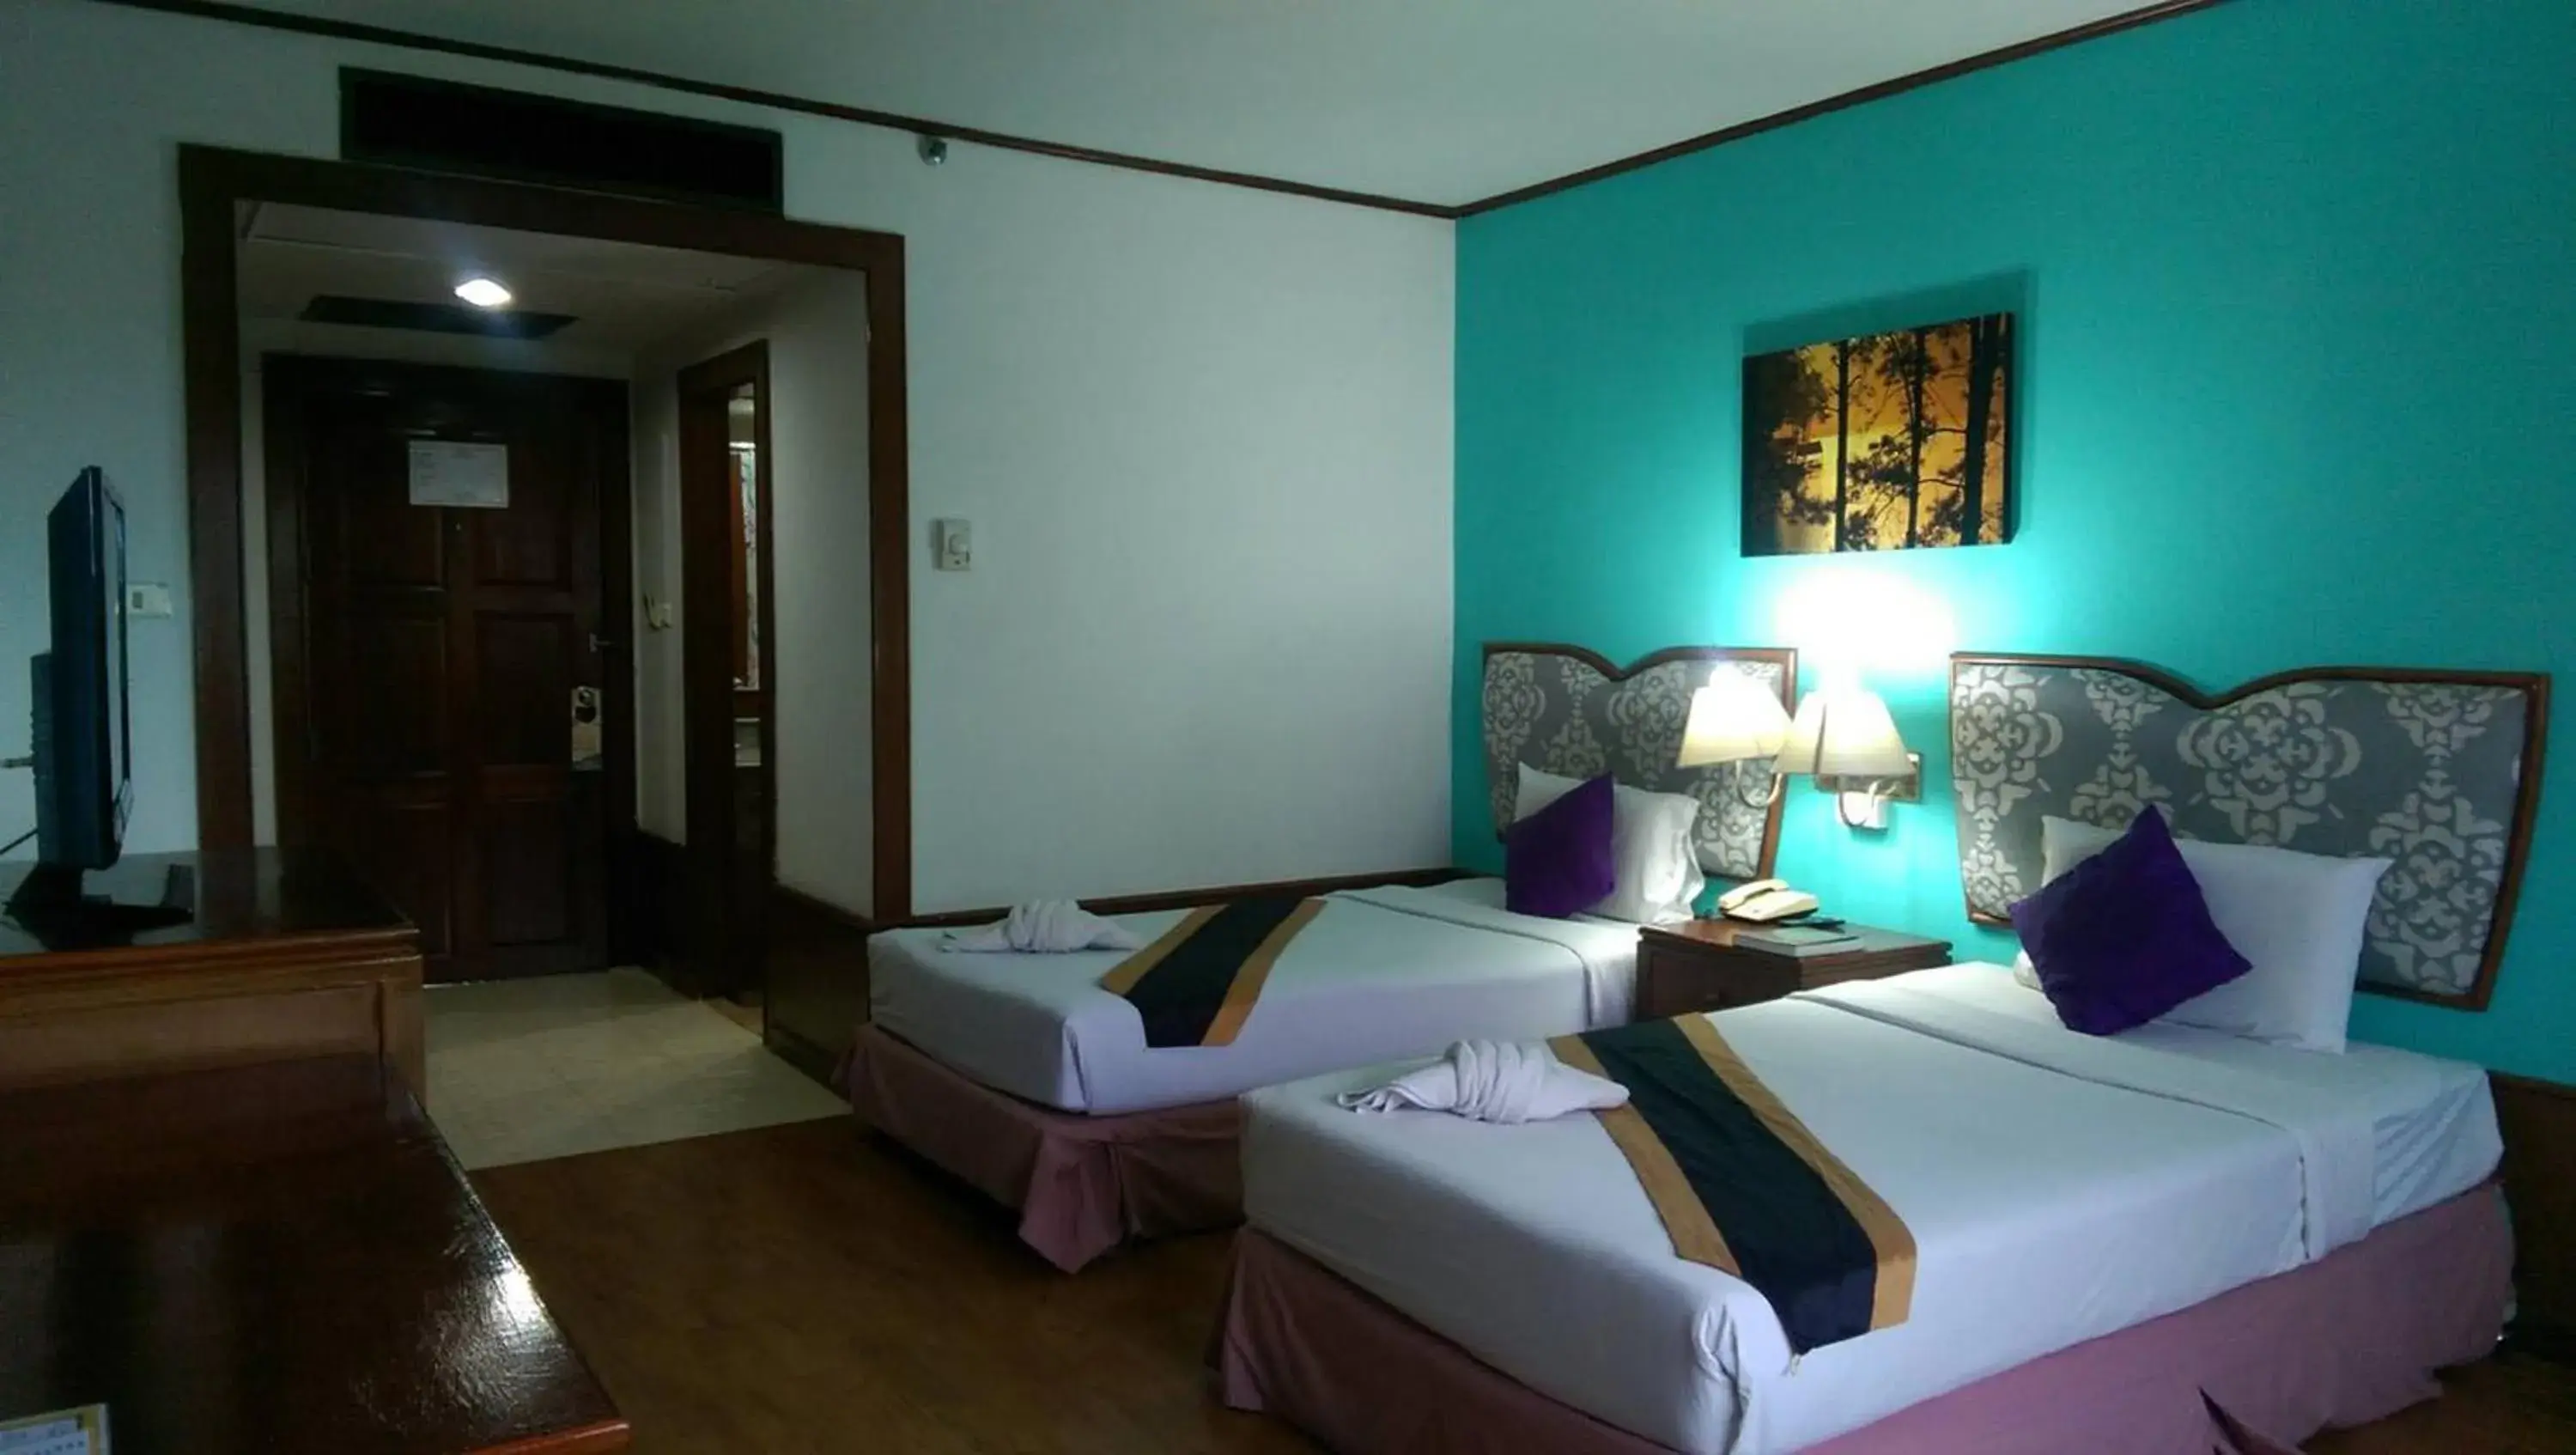 Bedroom, Room Photo in Wattana Park Hotel